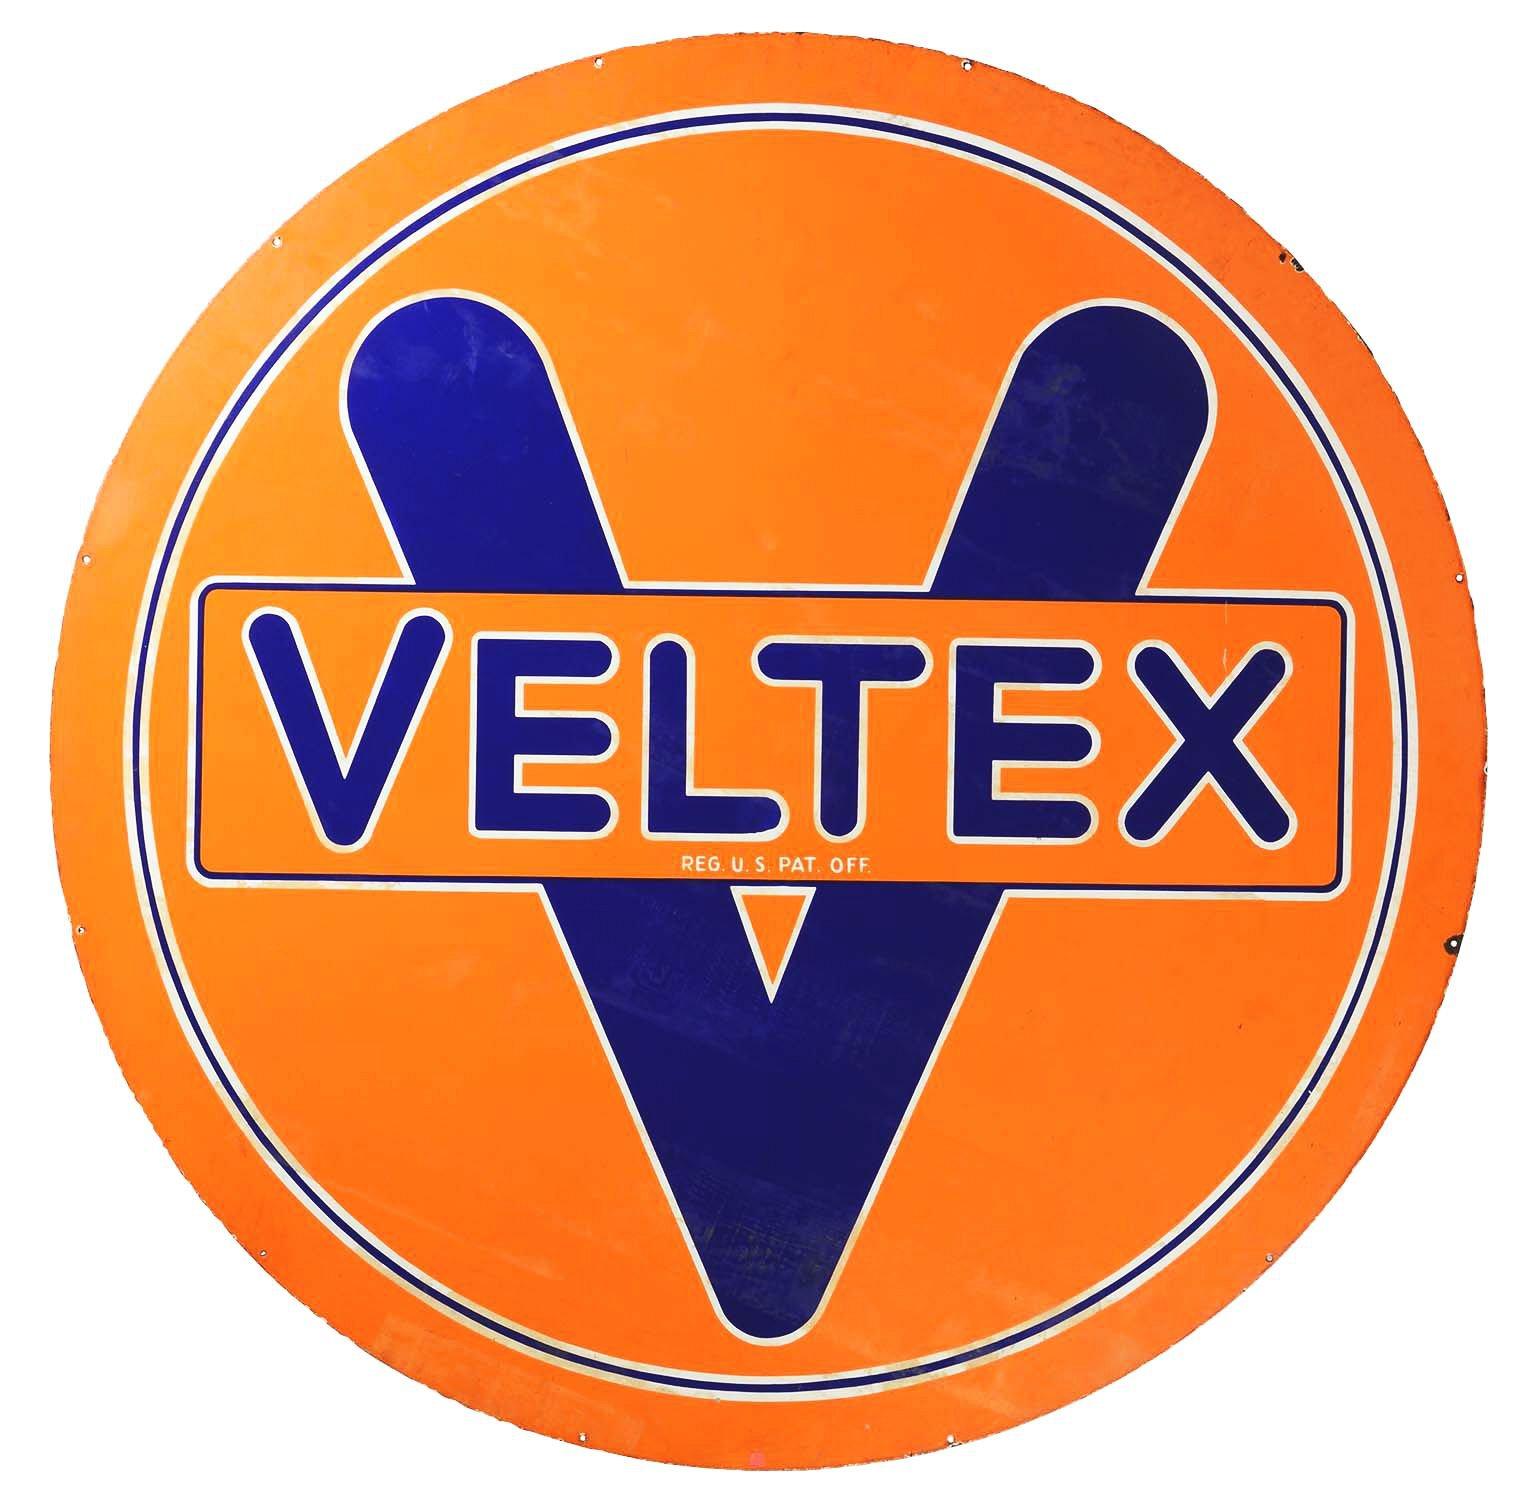 Veltex Gasoline Porcelain Station Identification Sign.